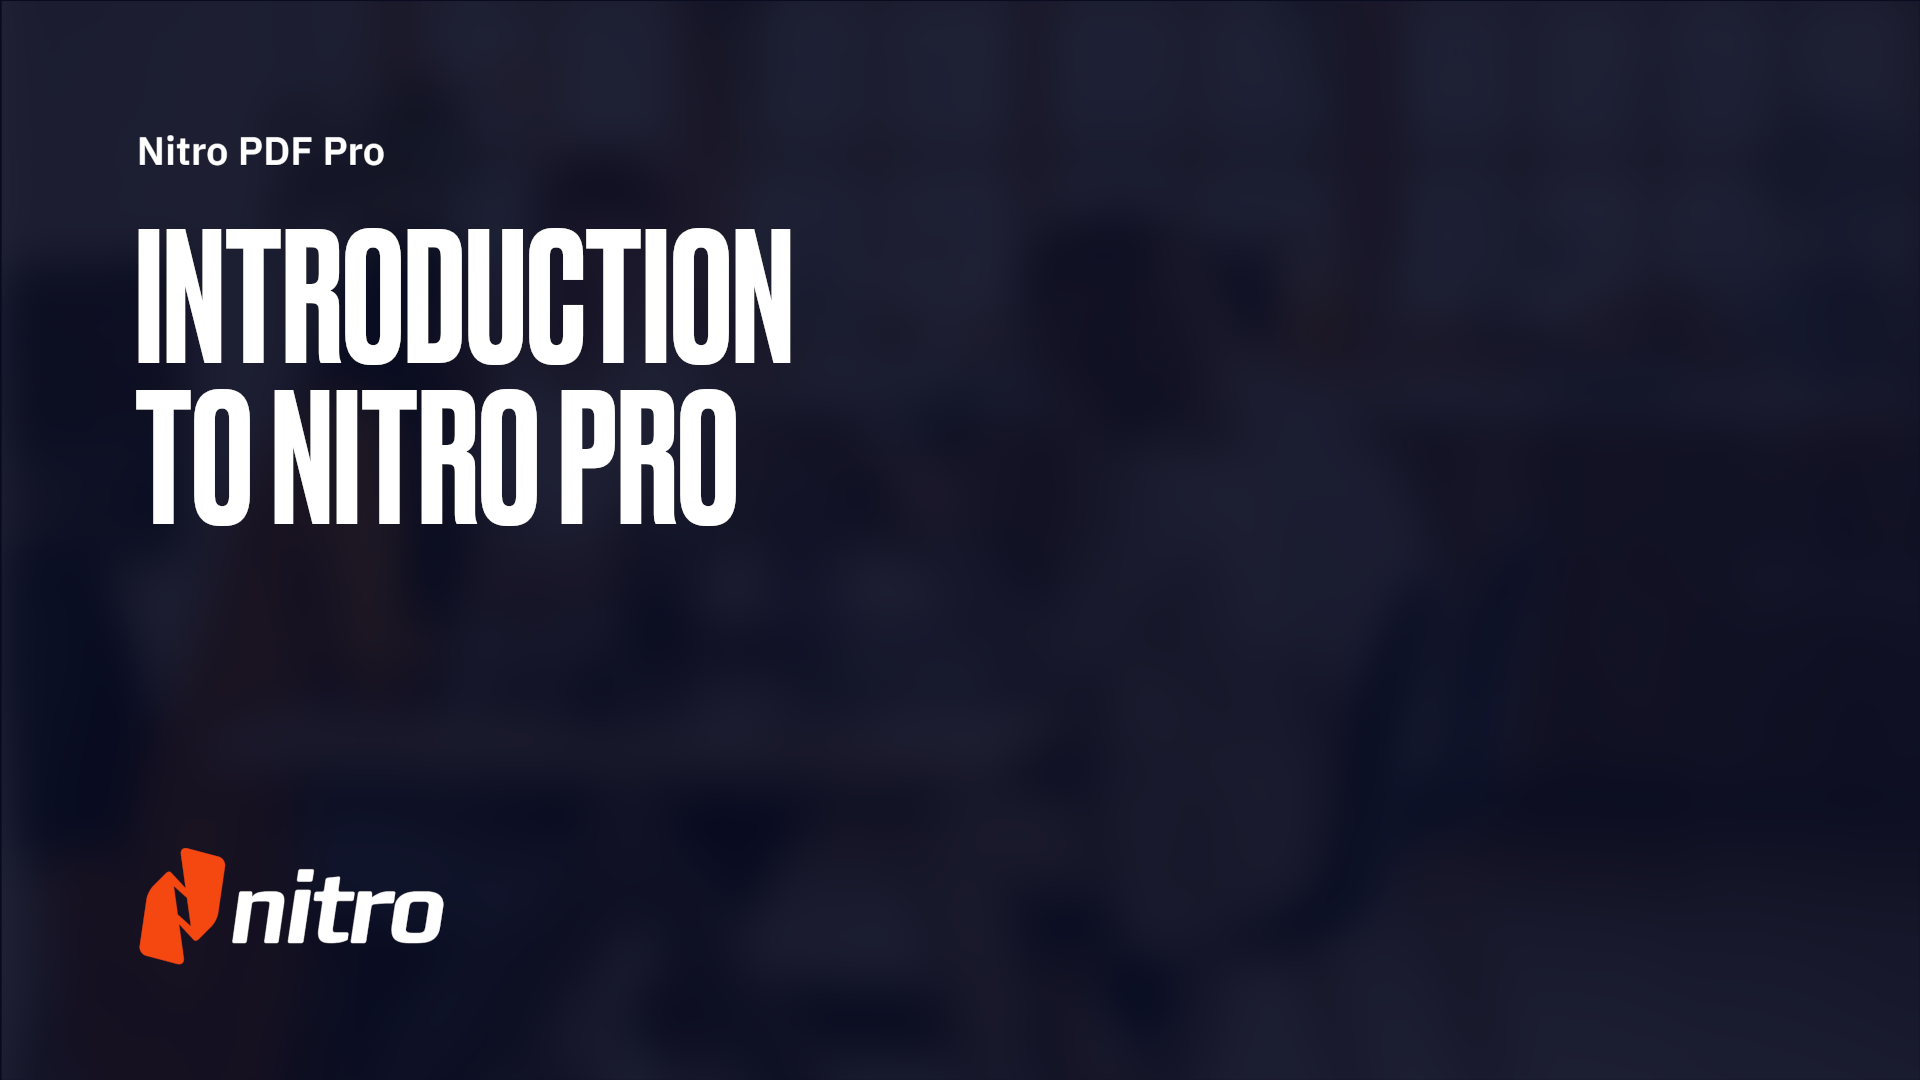 Nitro Pro Overview